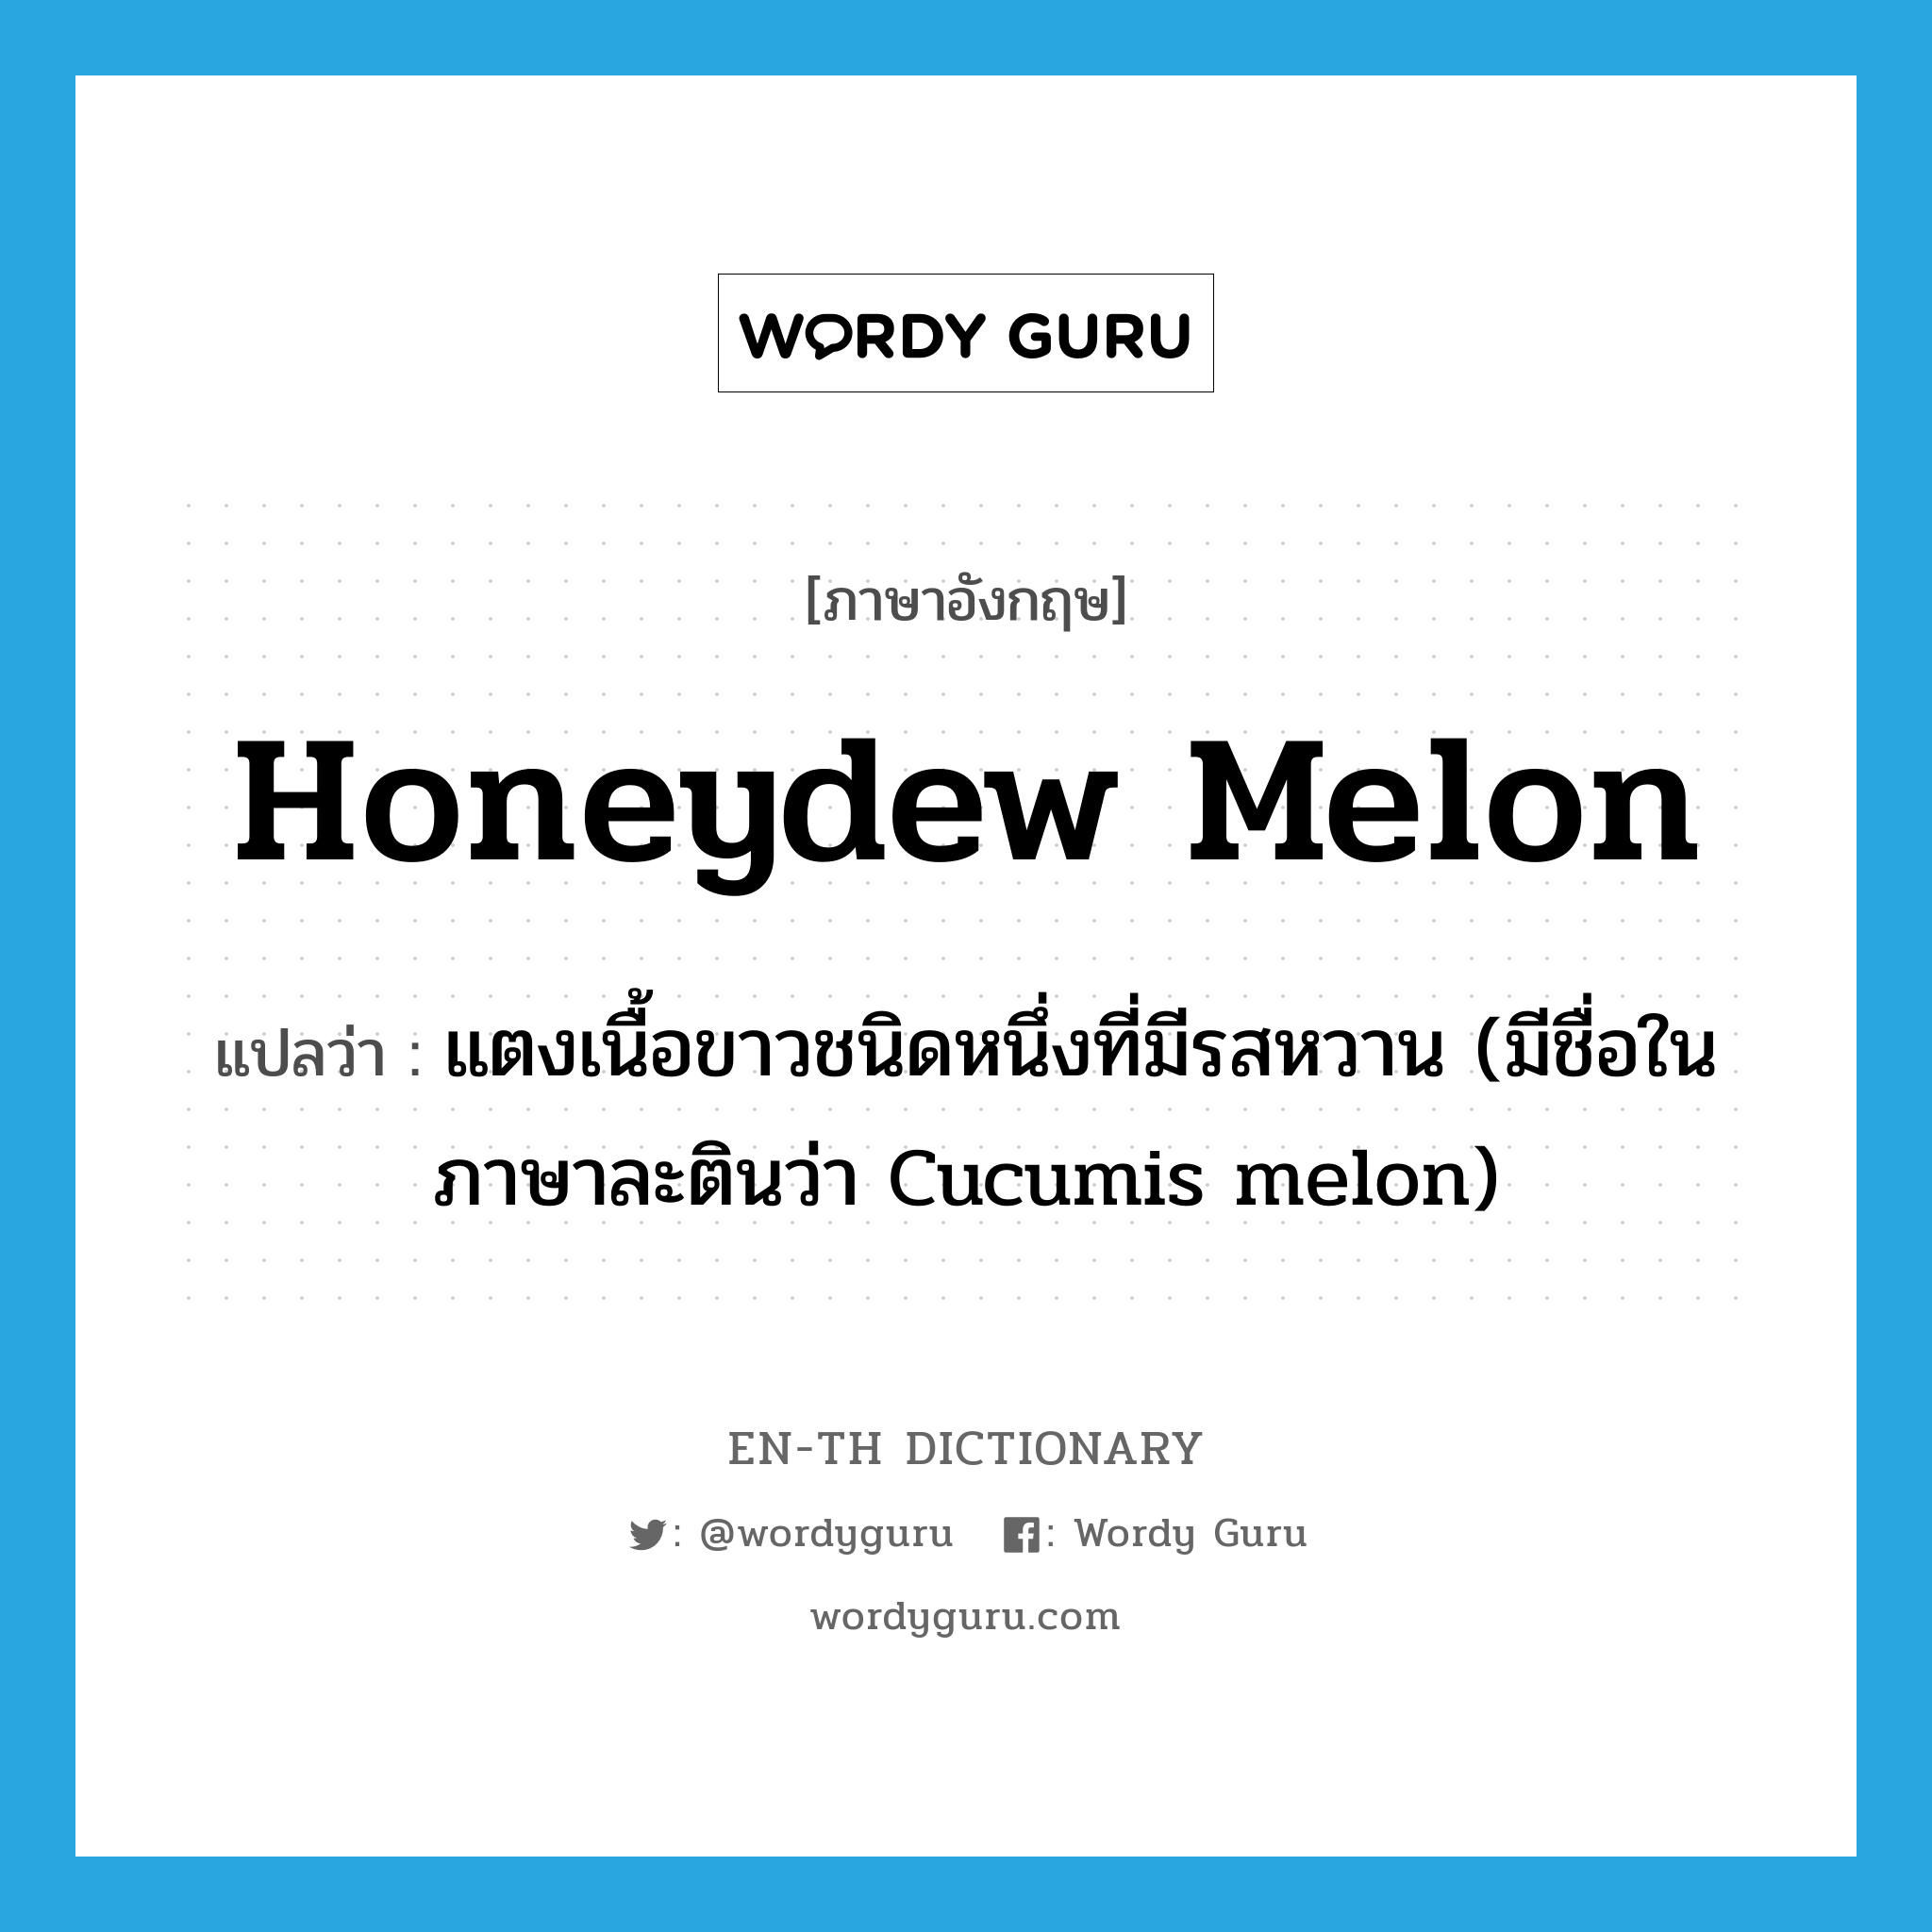 honeydew melon แปลว่า?, คำศัพท์ภาษาอังกฤษ honeydew melon แปลว่า แตงเนื้อขาวชนิดหนึ่งที่มีรสหวาน (มีชื่อในภาษาละตินว่า Cucumis melon) ประเภท N หมวด N